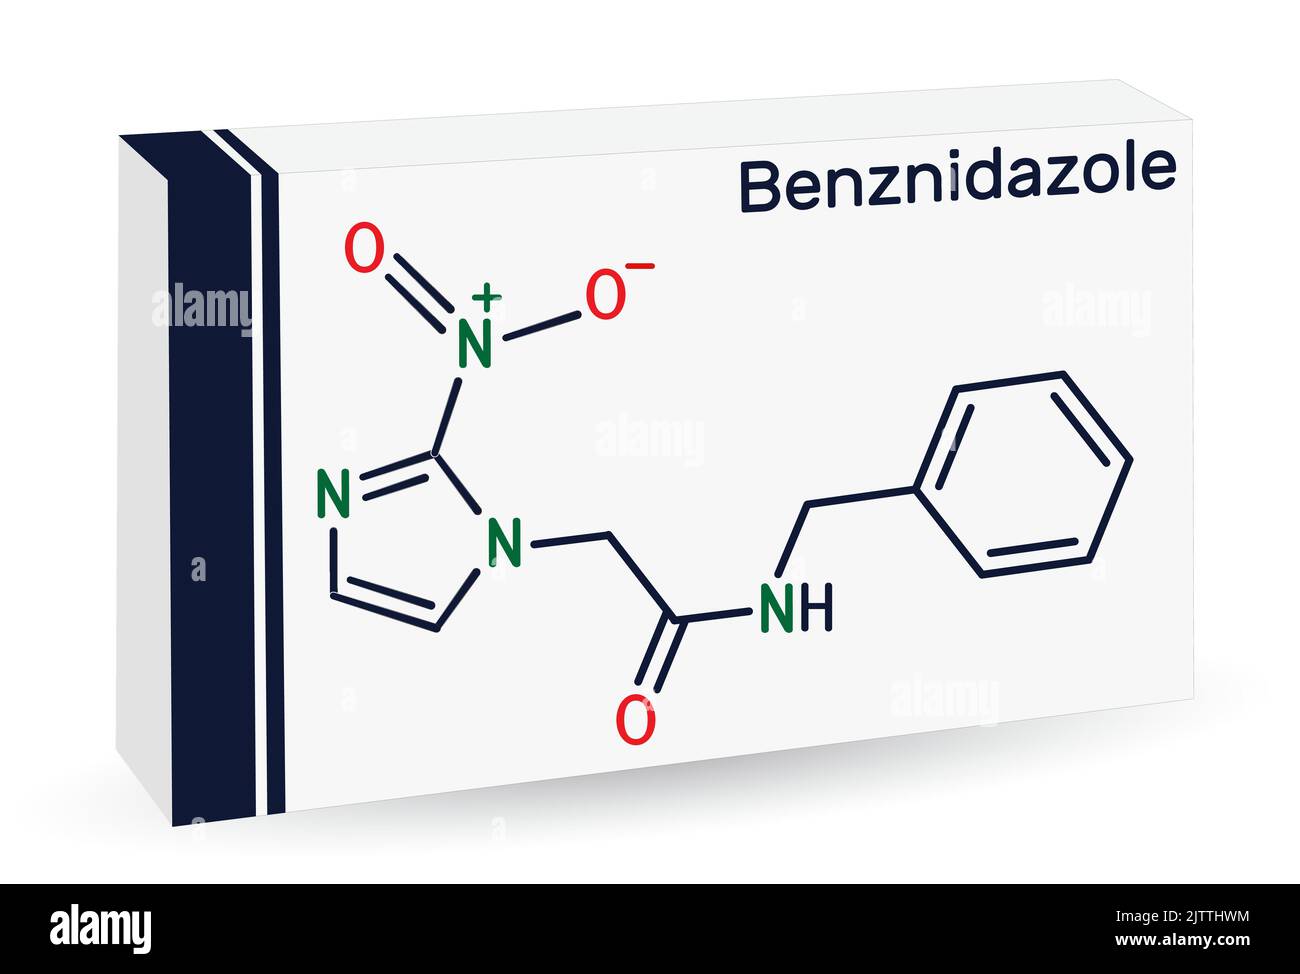 Molécule de benznidazole. Il s'agit d'un médicament antiparasite utilisé dans le traitement de la maladie de Chagas. Formule chimique du squelette. Emballage en papier pour médicaments. Vecteur Illustration de Vecteur